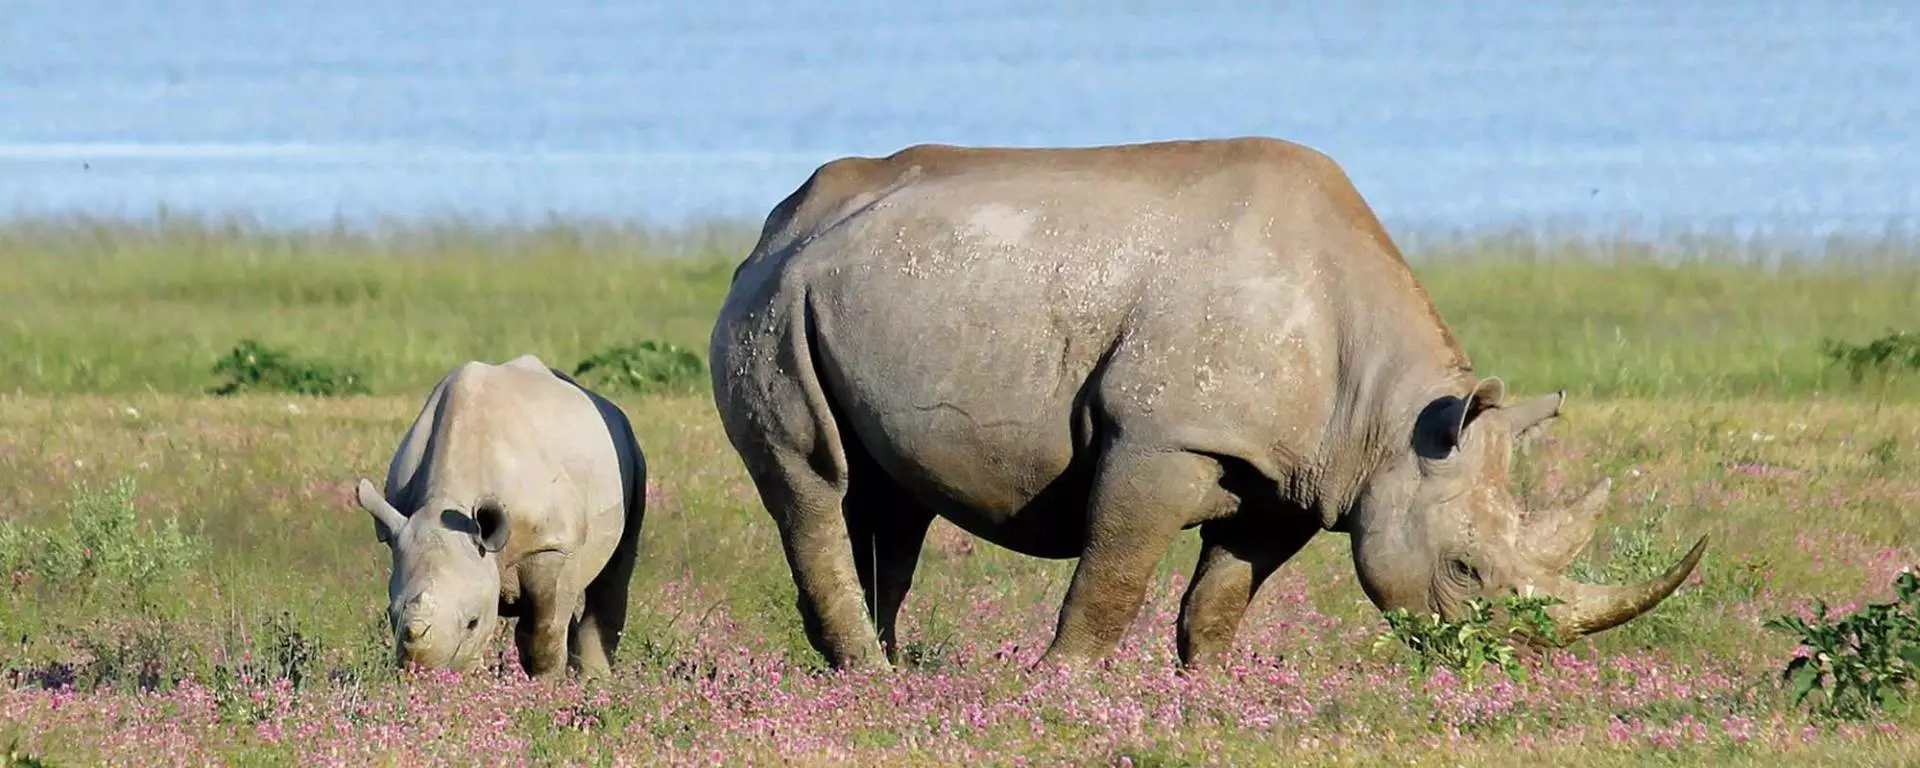 Rhino Conservation Project at Kuzikus